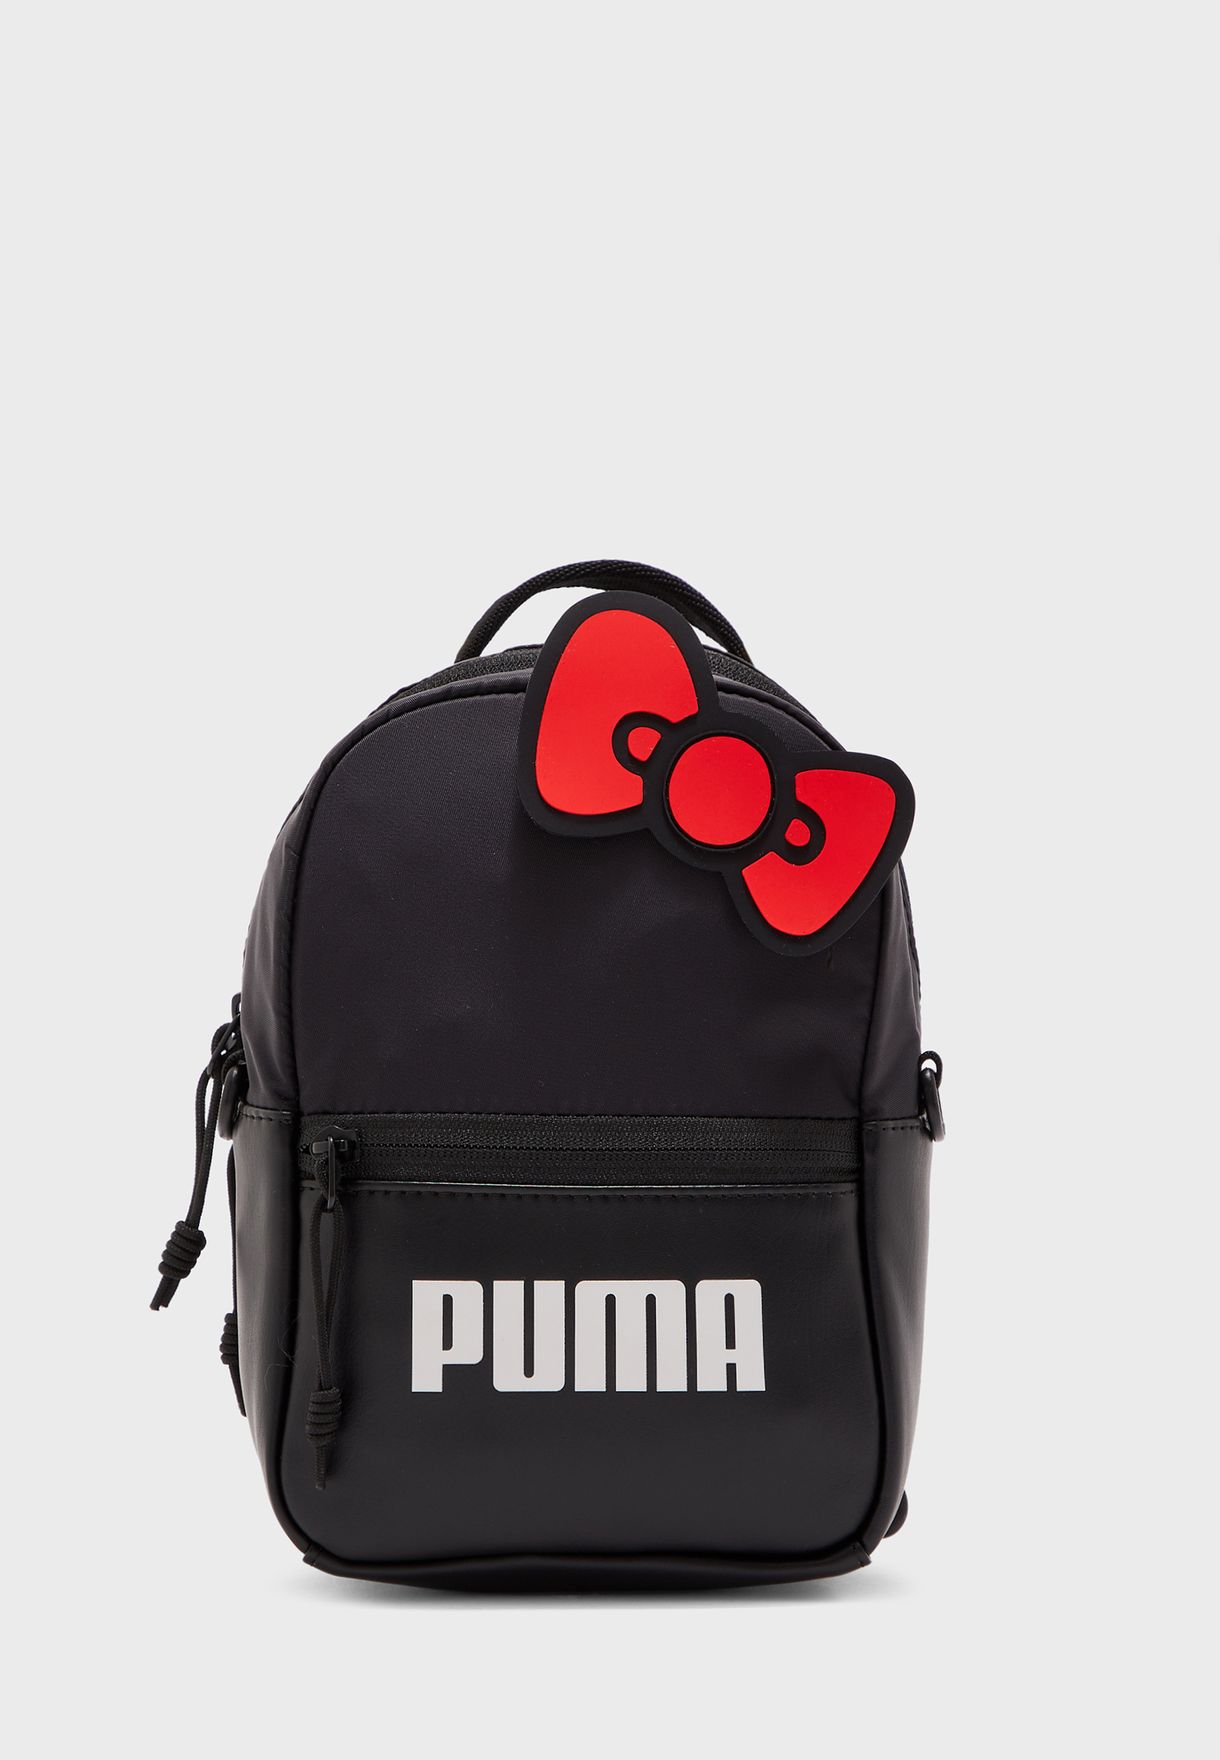 puma x hello kitty backpack